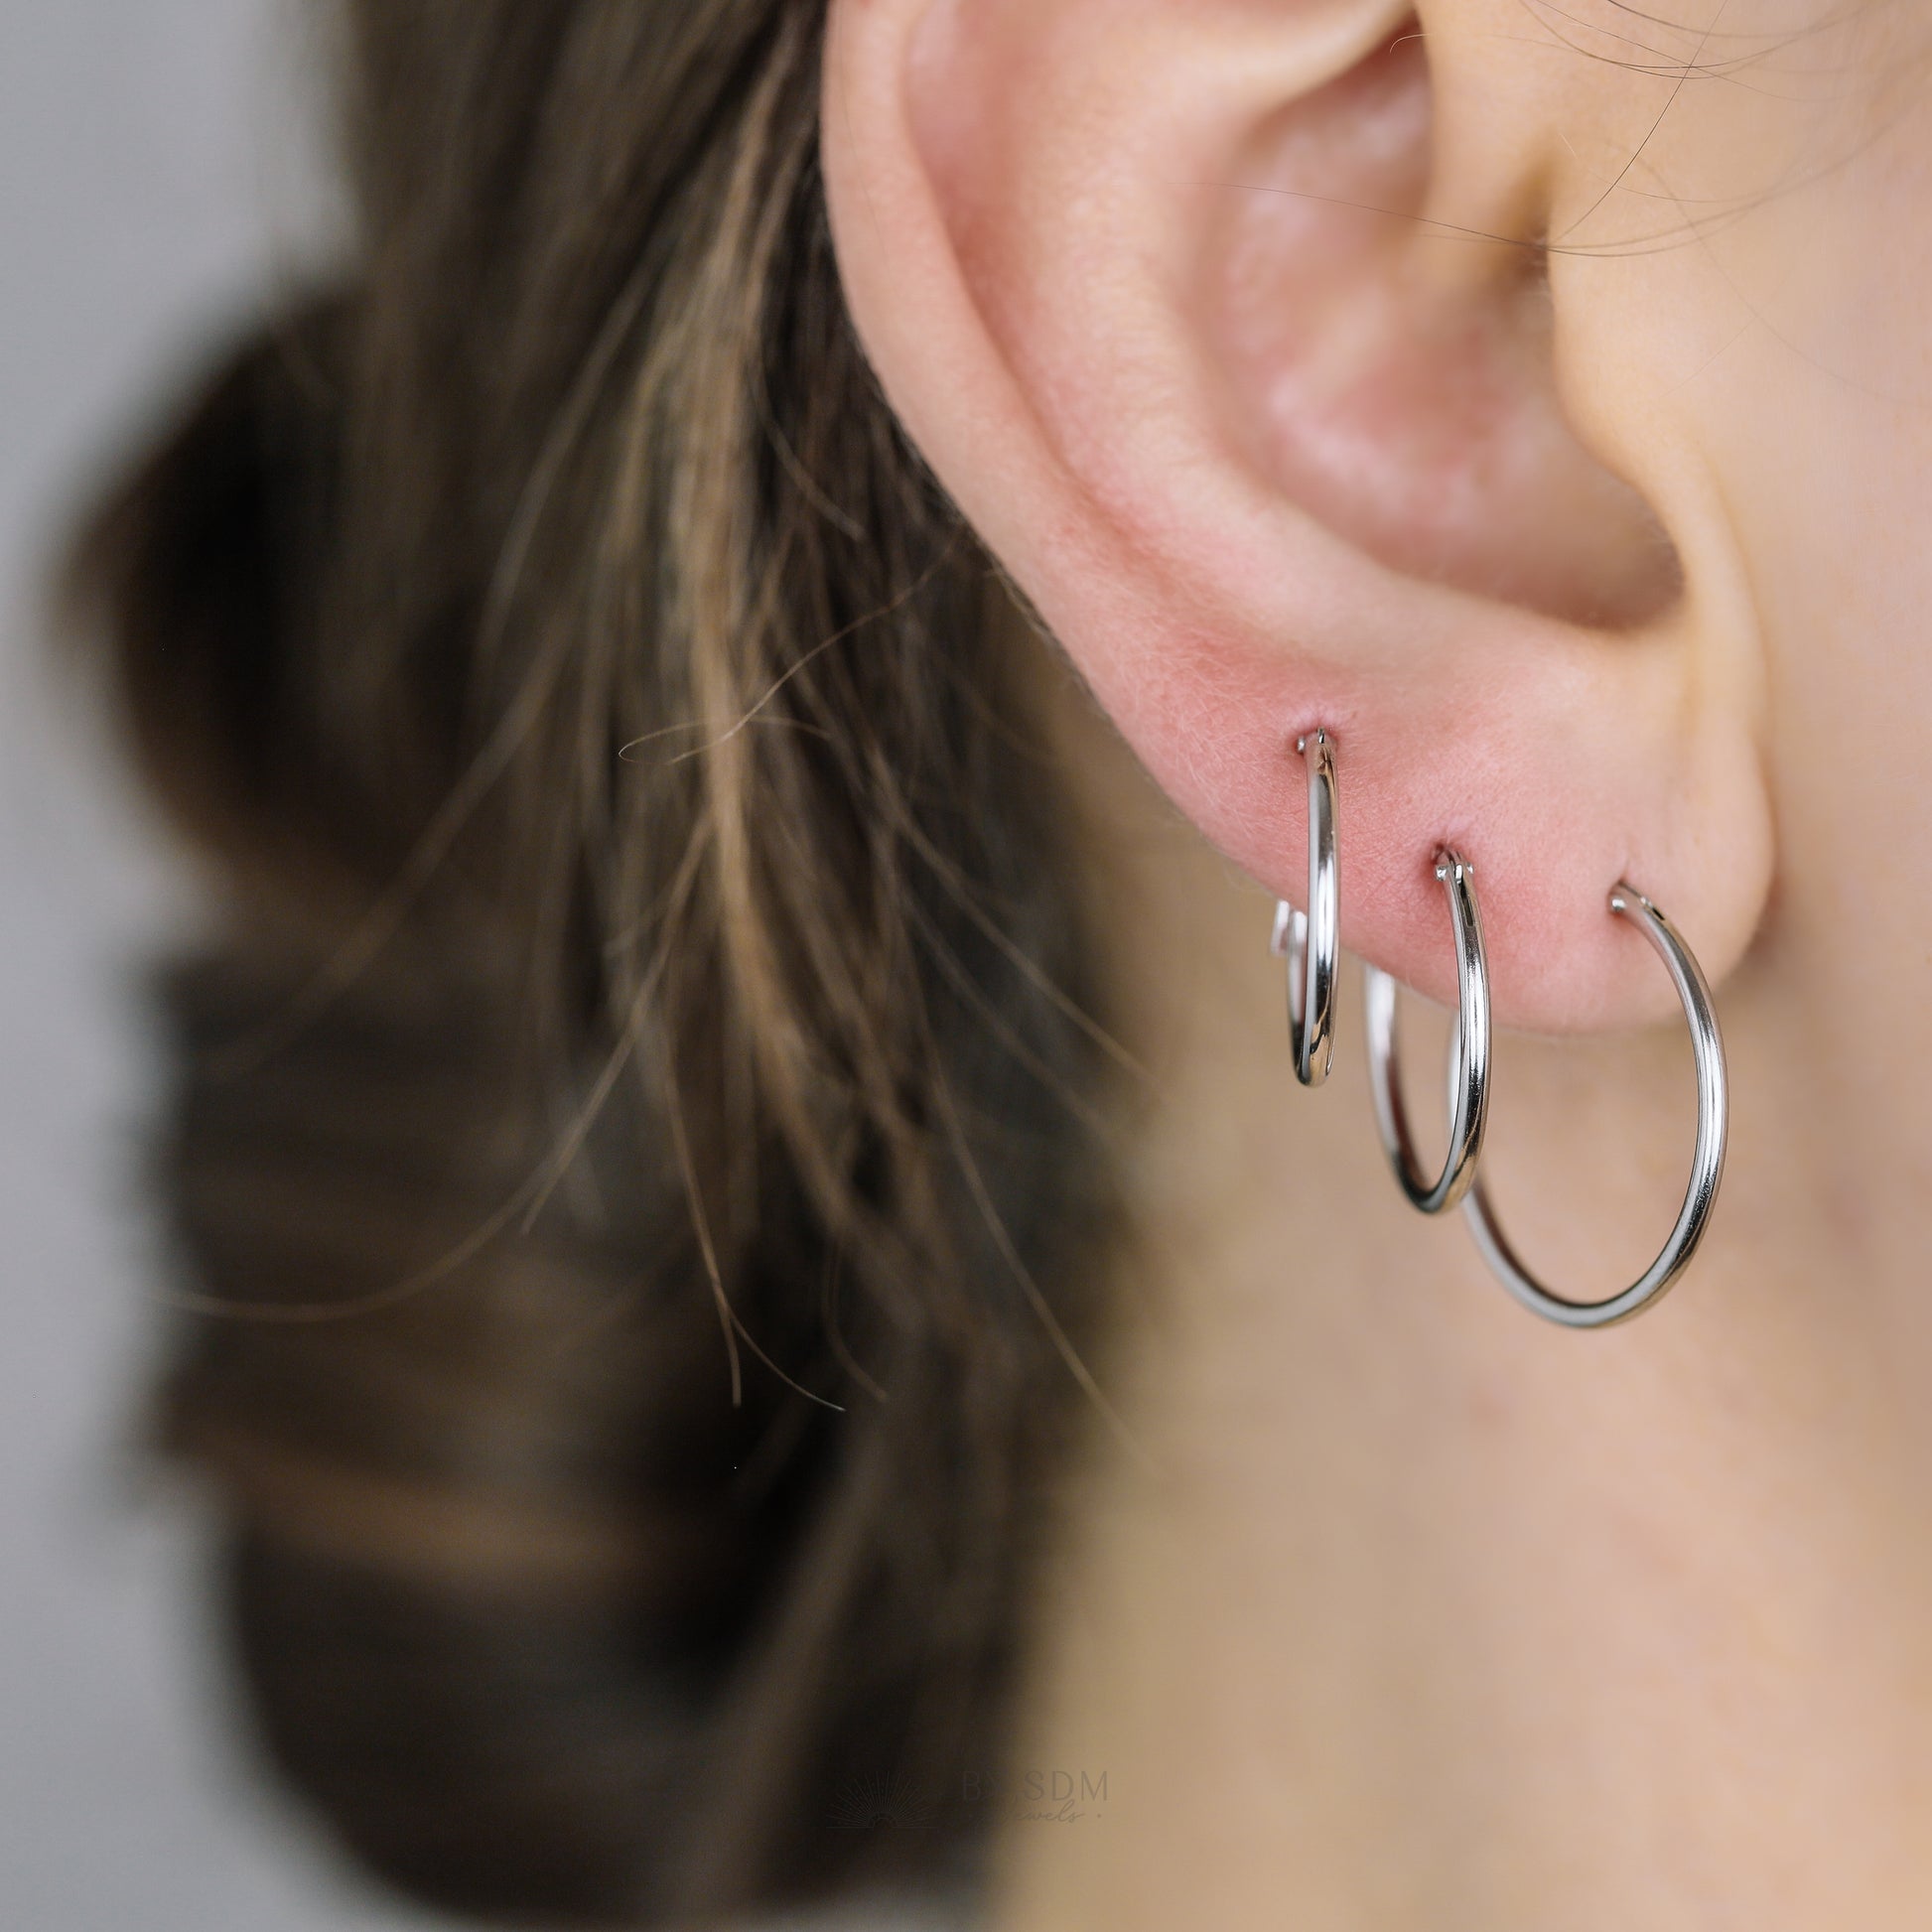 Thin Hoops Rings for Ear Piercings, Hoop With Hinge, 6, 8, 10, 12, 14, 16, 18mm, Silver, BYSDMJEWELS